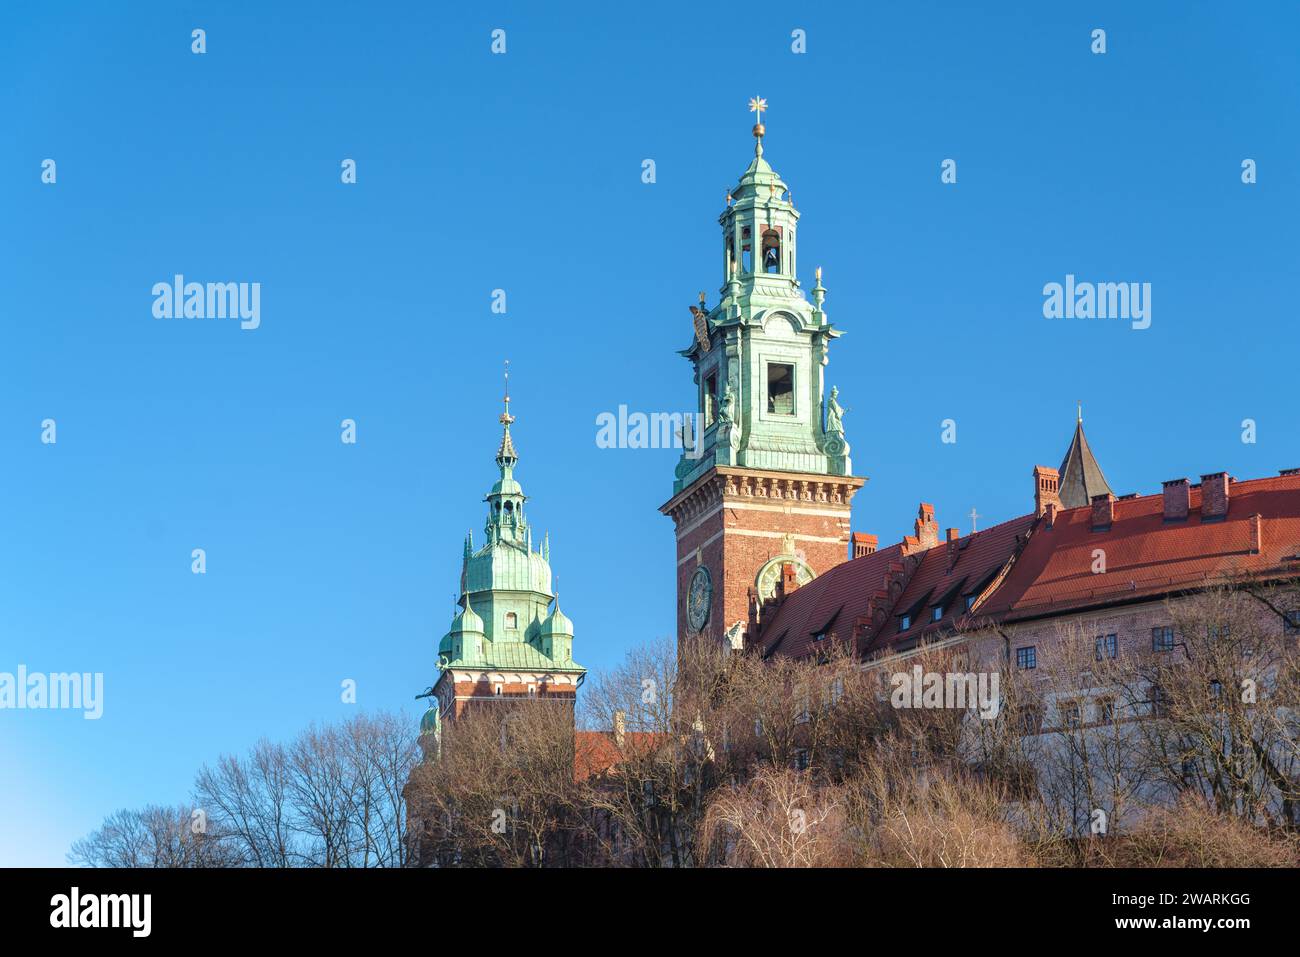 Außenansicht des berühmten Wawel-Schlosses in Krakau, Polen. Es ist eine befestigte Residenz an der Weichsel und repräsentiert fast die gesamte europäische Architektur Stockfoto